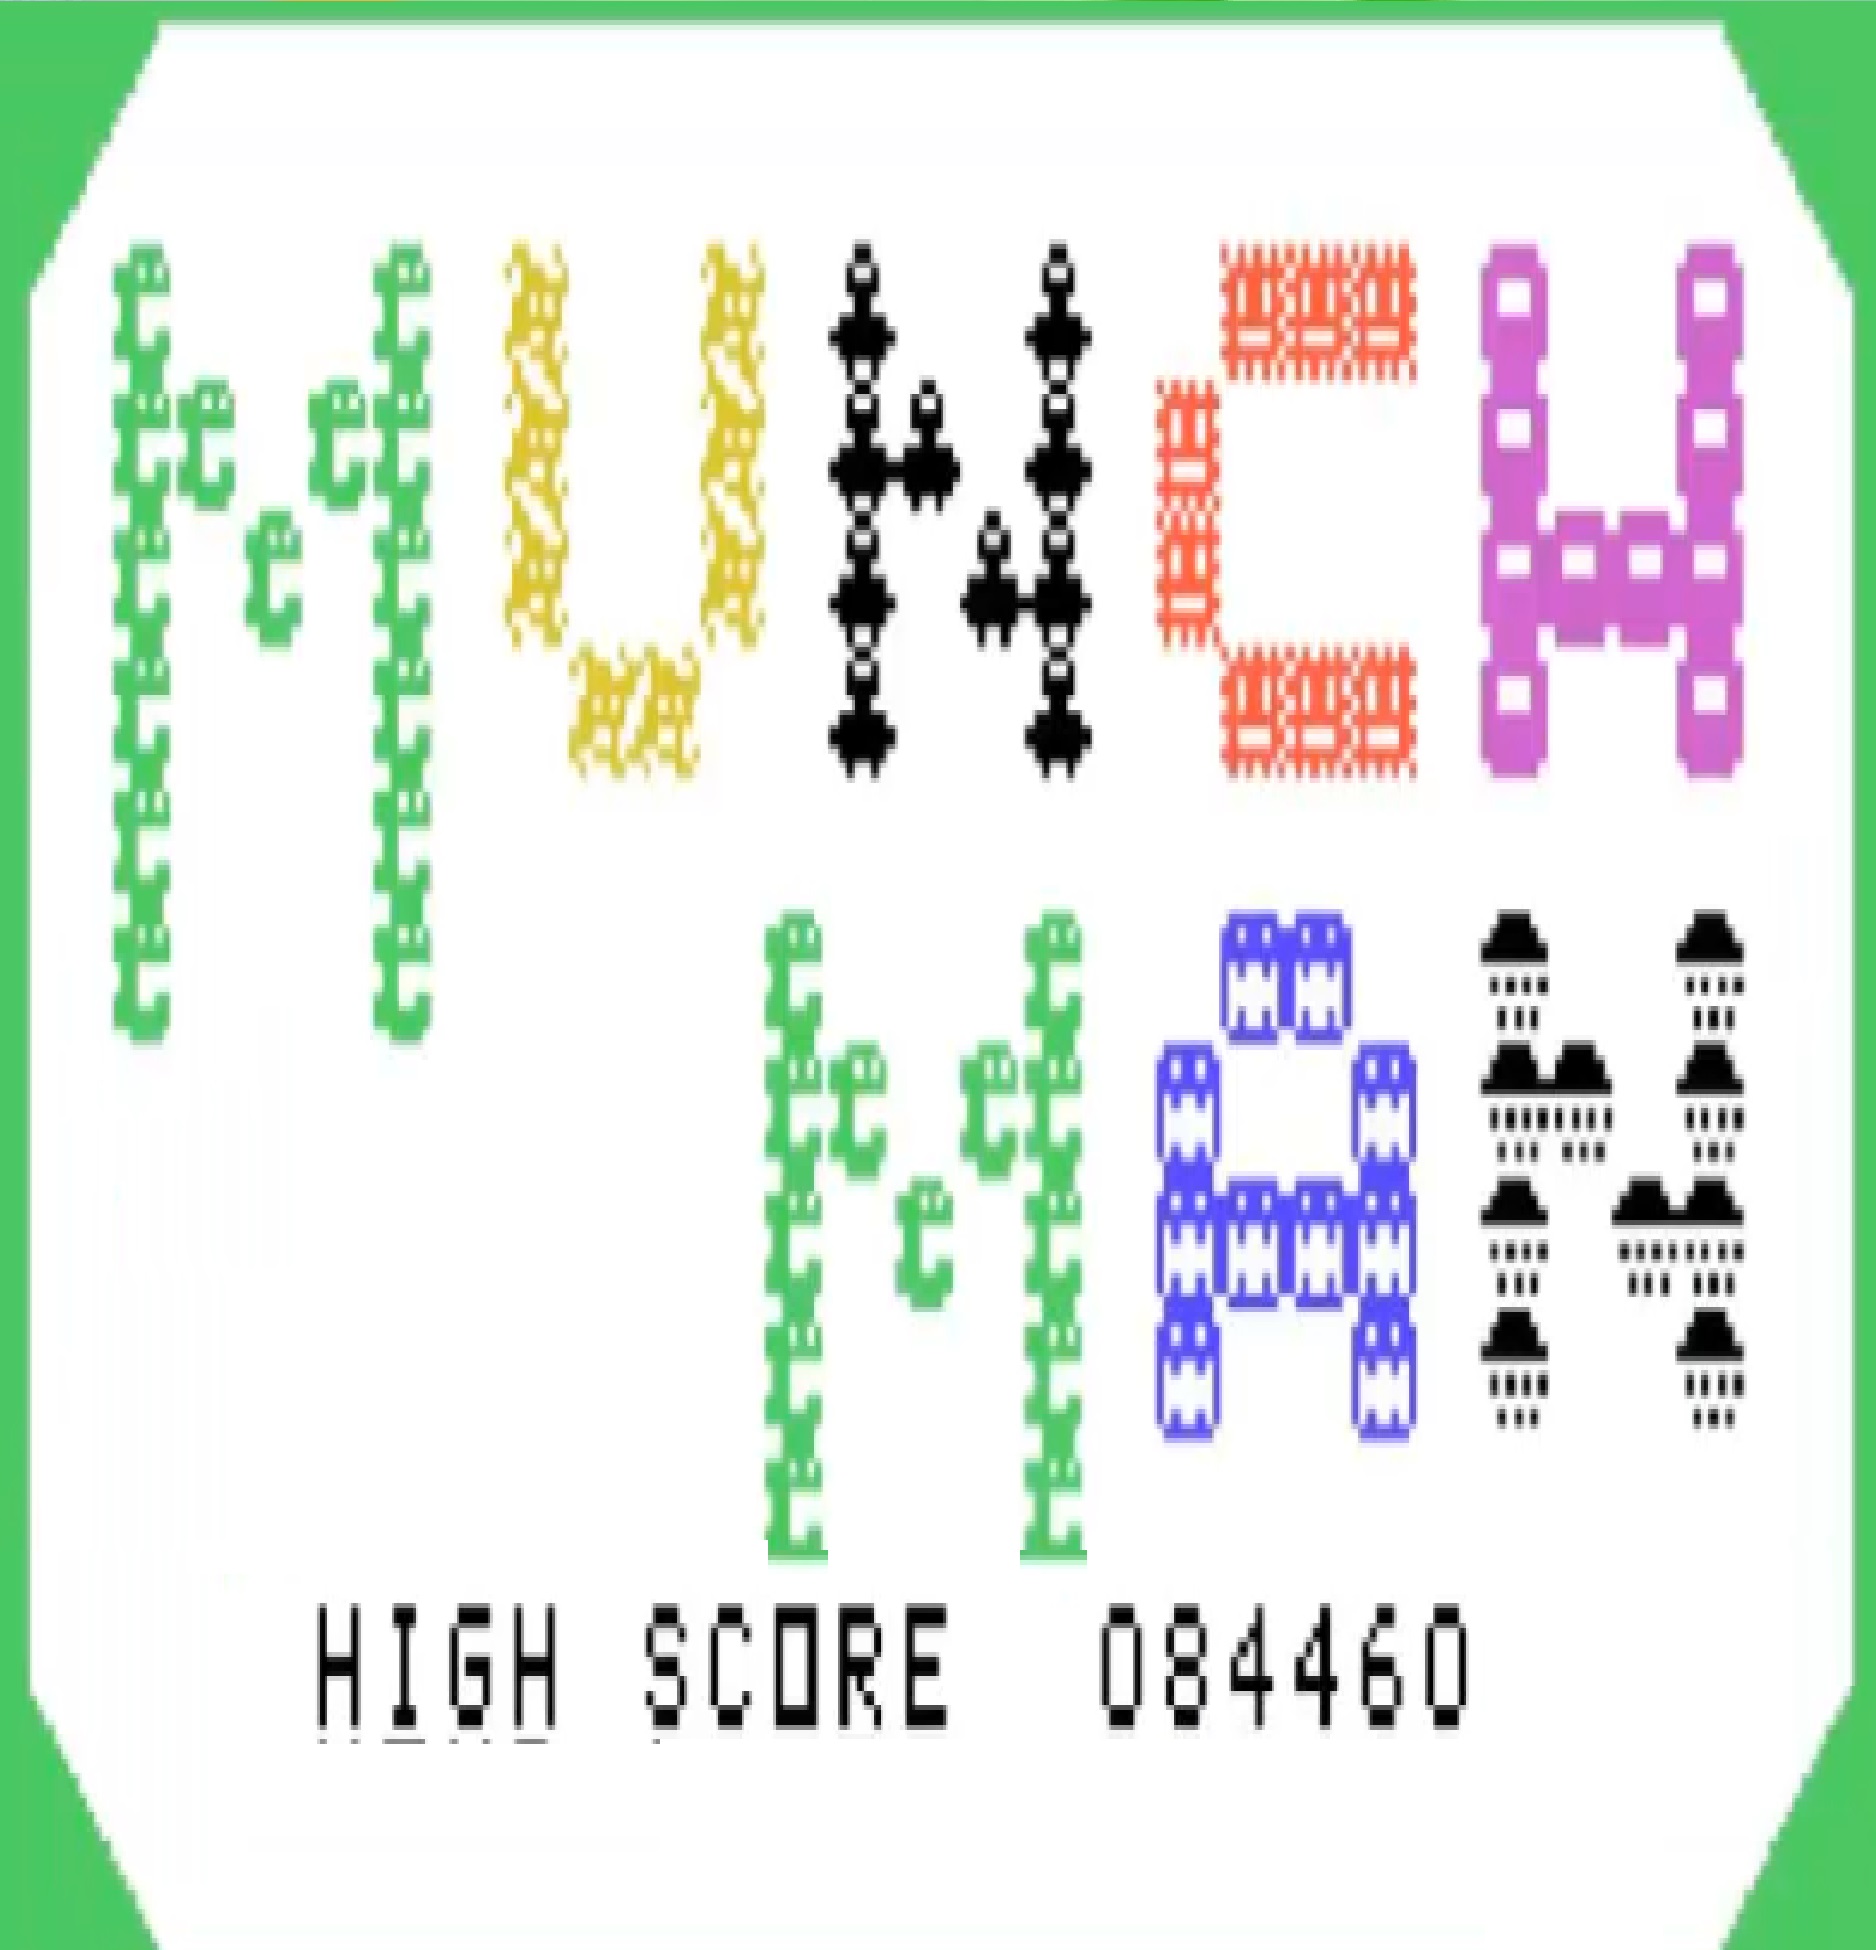 Munch Man (TI-99) High Score 84460 (Pac-Man Inspired Game)